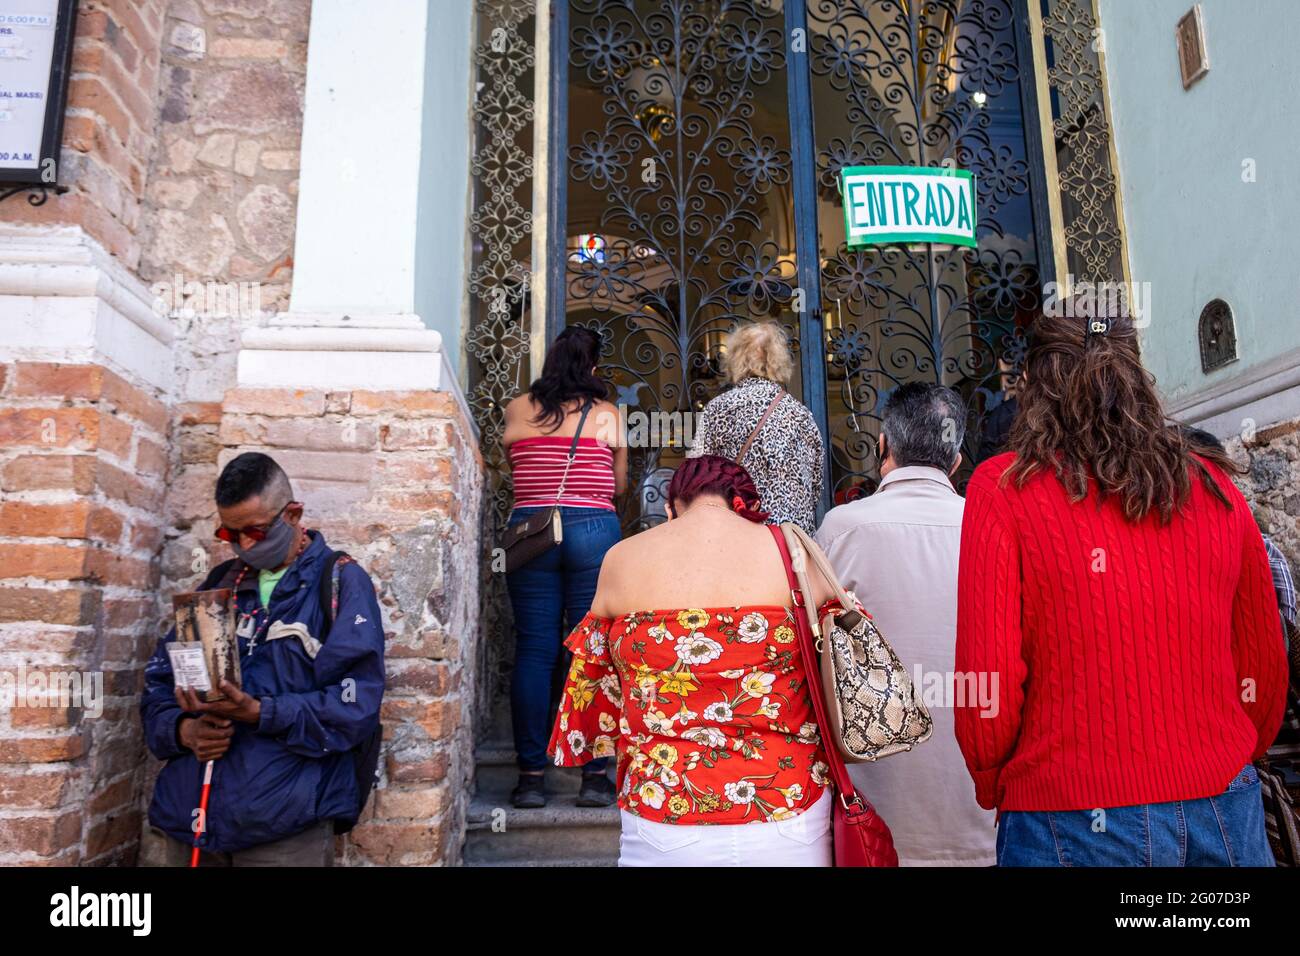 Les adorateurs se trouvent devant une église à Puerto Vallarta, au Mexique, pendant la pandémie de Covid-19 Banque D'Images